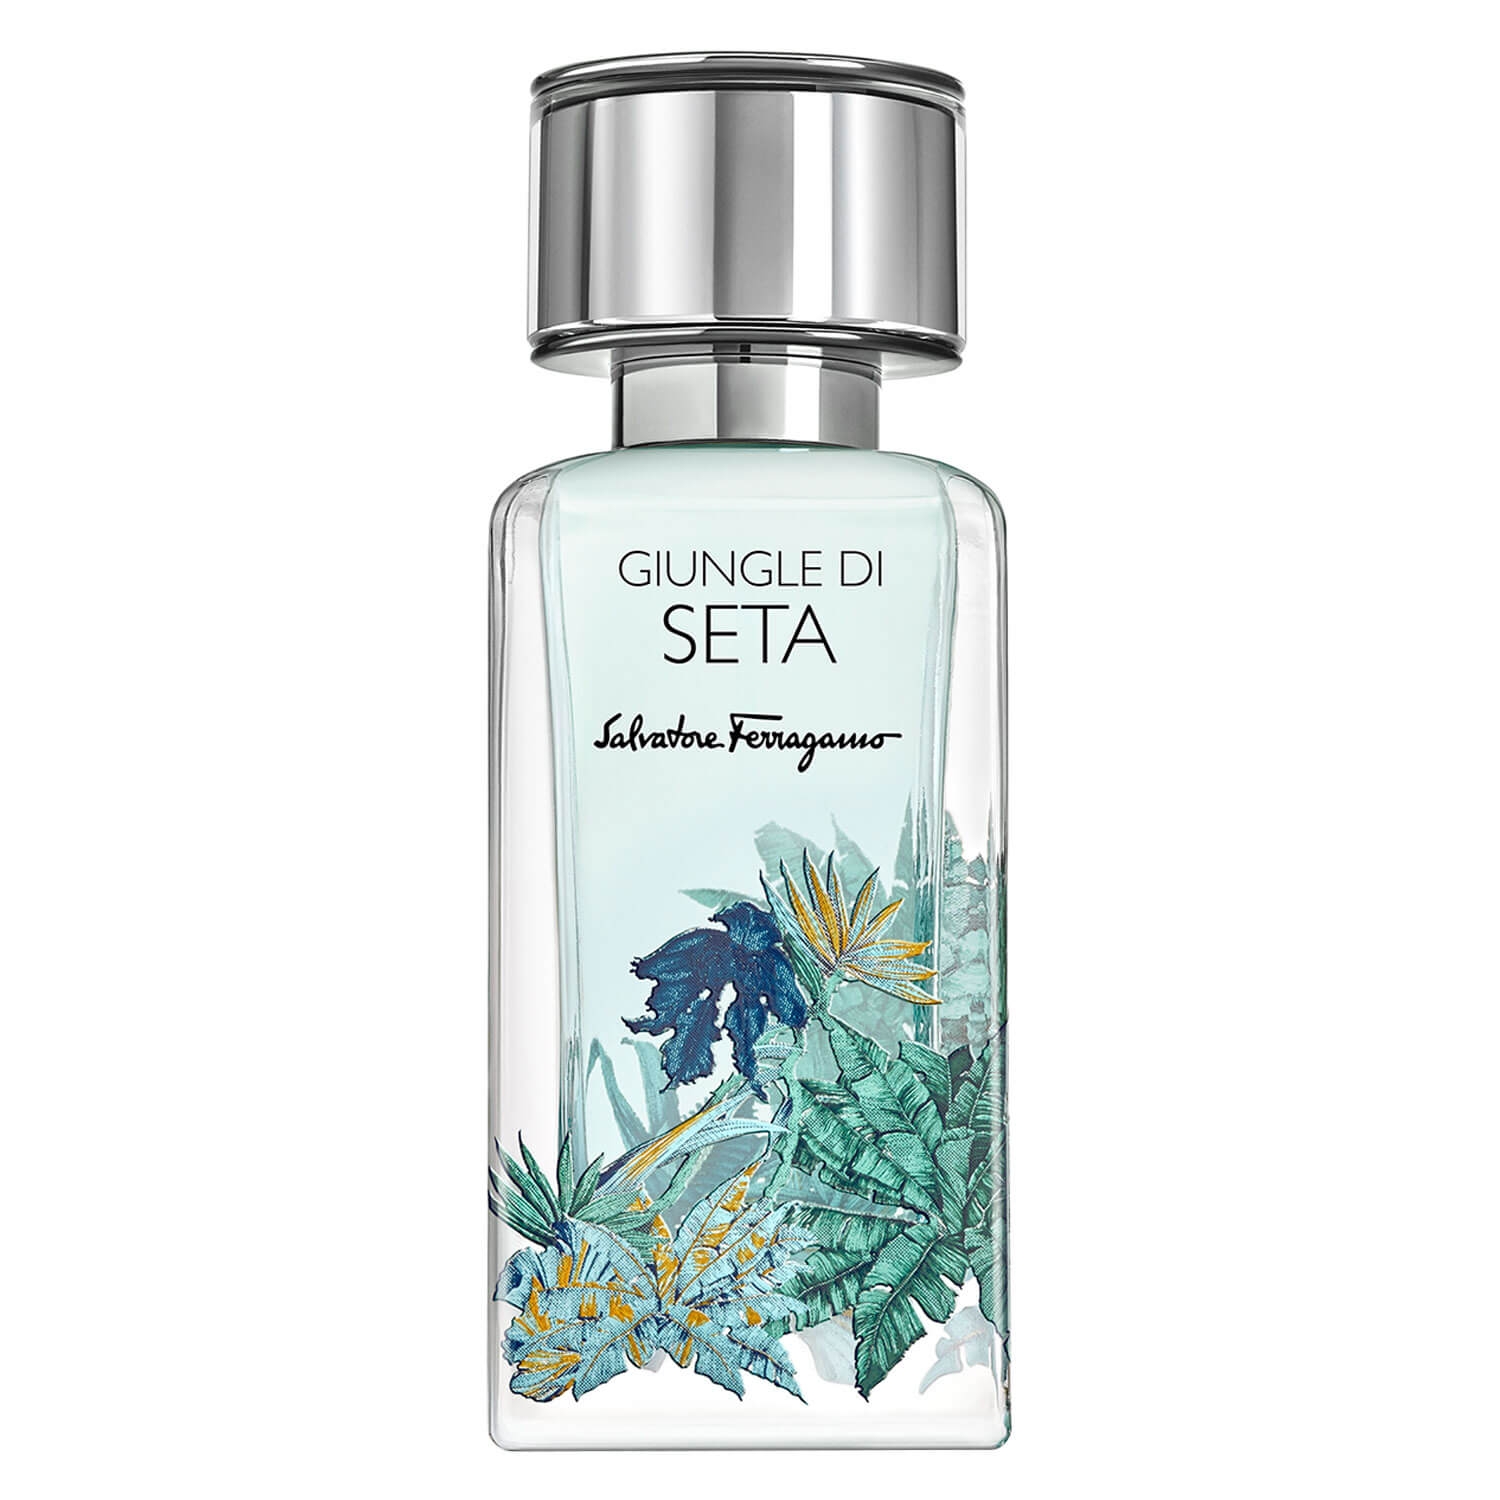 Produktbild von Salvatore Ferragamo - Giungle Di Seta Eau de Parfum